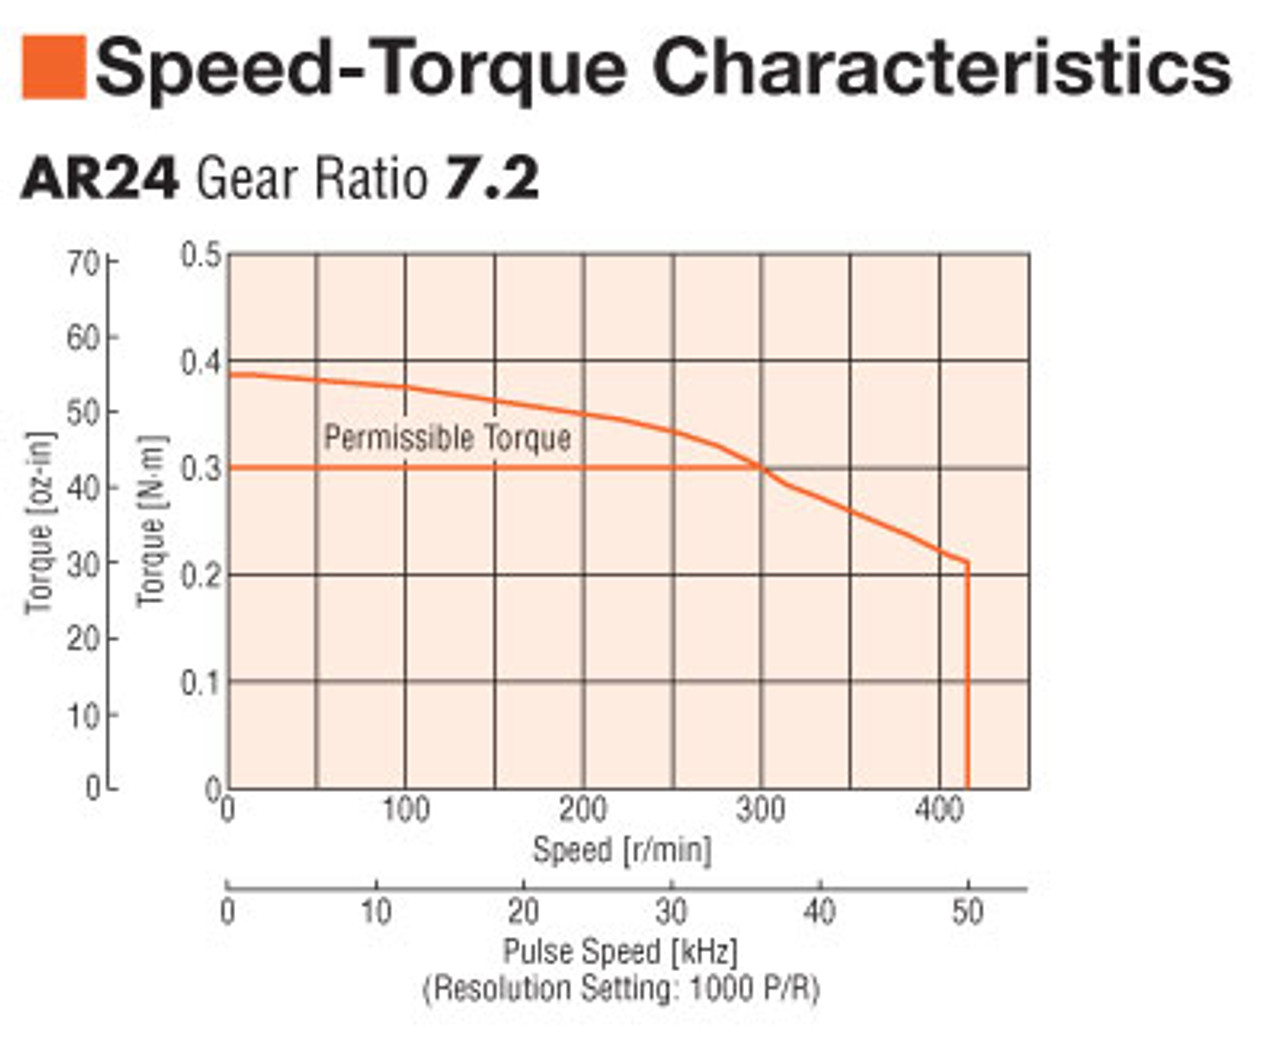 ARM24SAK-PS7 - Speed-Torque